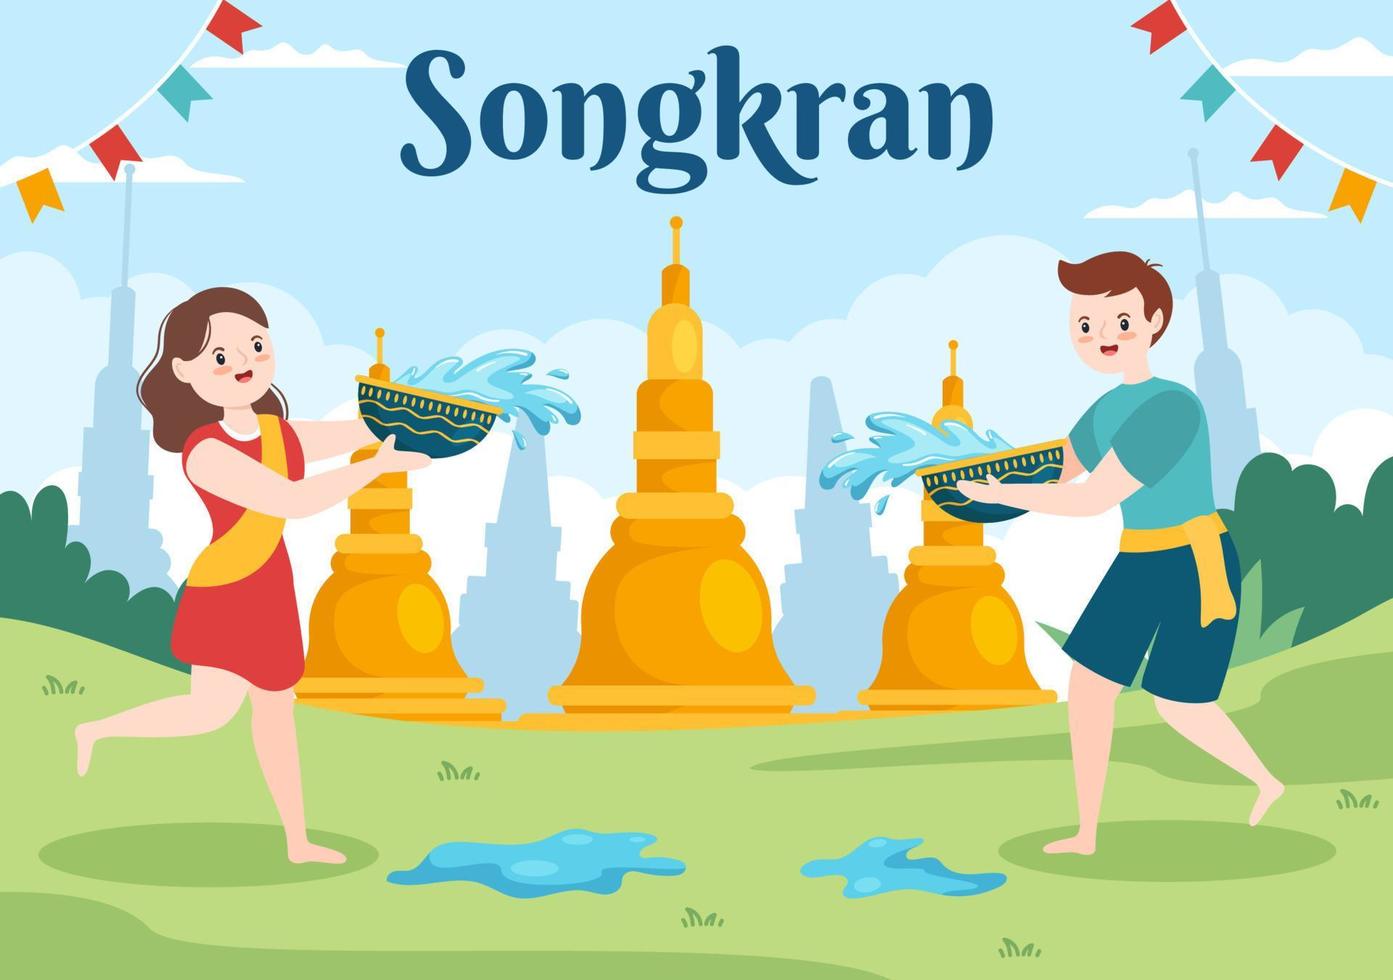 happy songkran festival day handgezeichnete karikaturillustration, die wasserpistole in thailand-feier im flachen hintergrunddesign spielt vektor